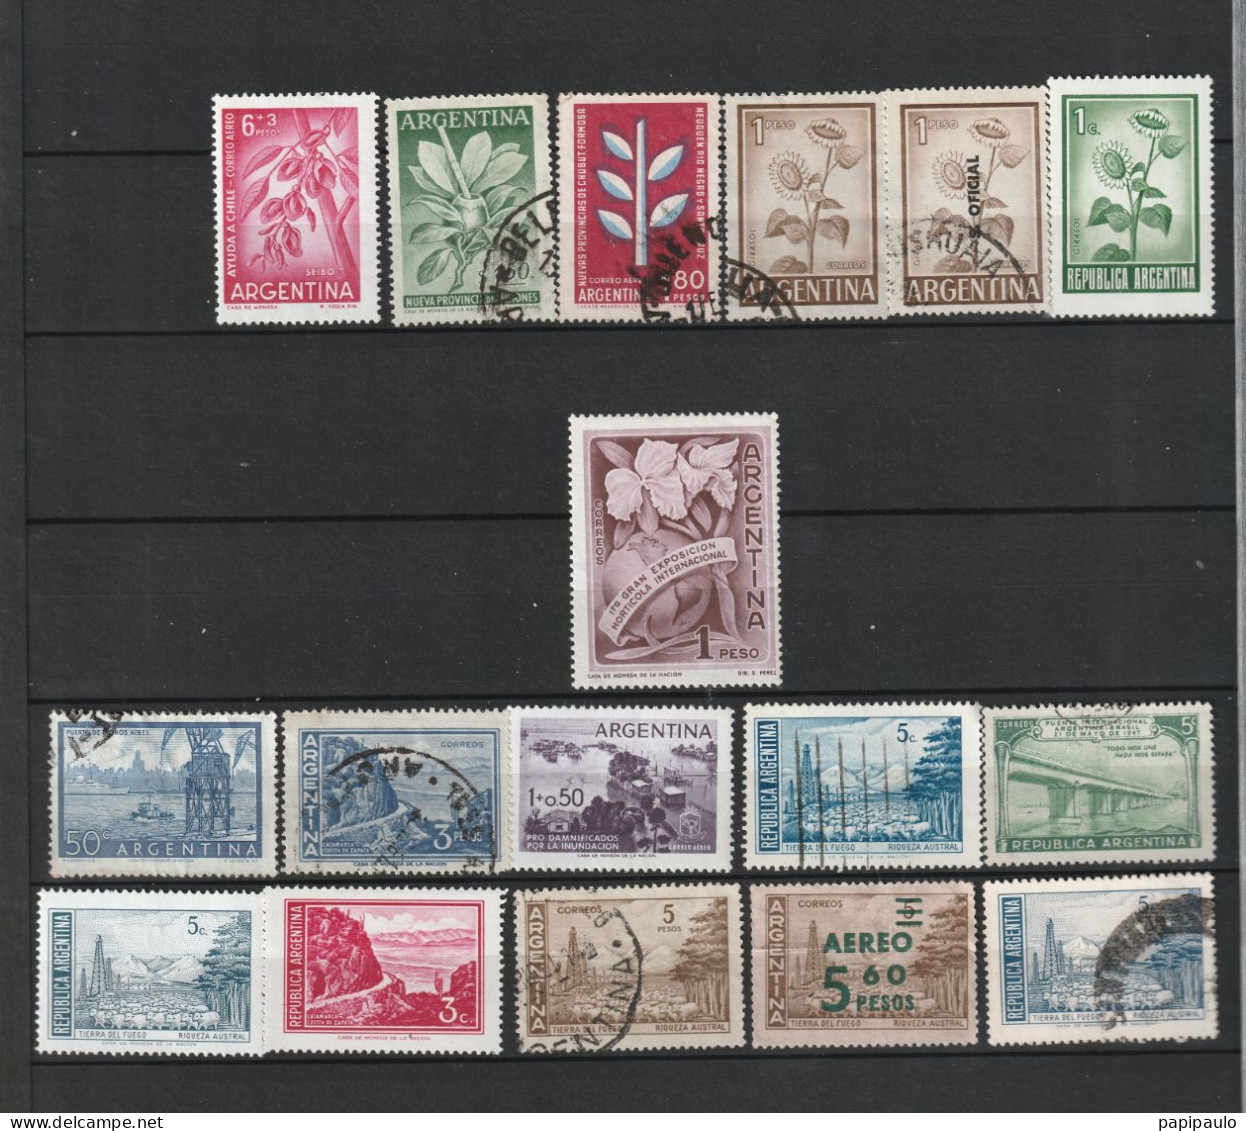 Lot de plus de 400 timbres d'Argentine